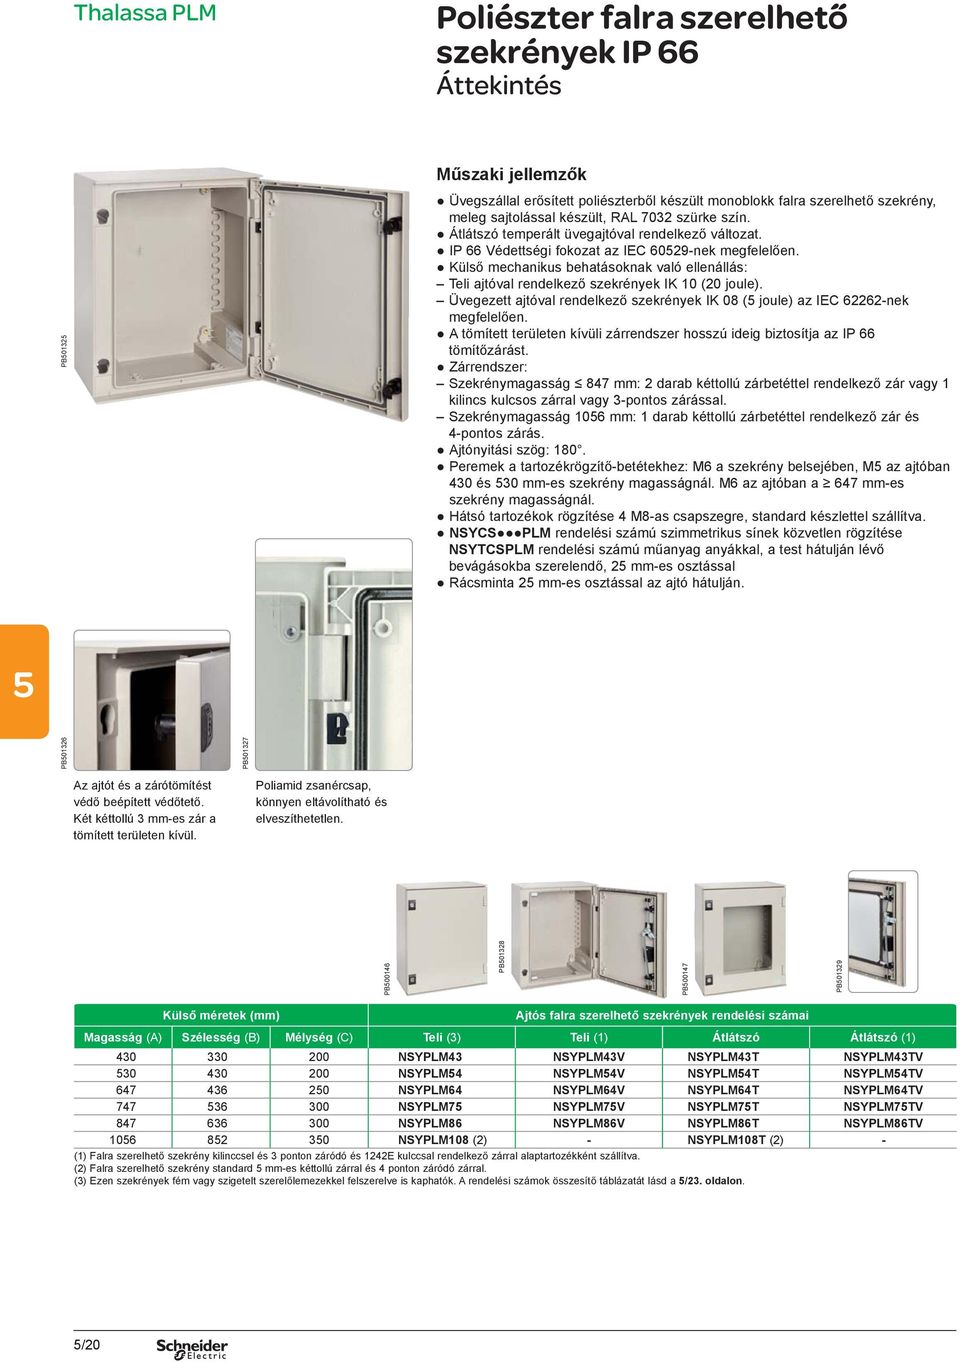 Külső mechanikus behatásoknak való ellenállás: Teli ajtóval rendelkező szekrények IK 10 (20 joule). Üvegezett ajtóval rendelkező szekrények IK 08 ( joule) az IEC 62262-nek megfelelően.